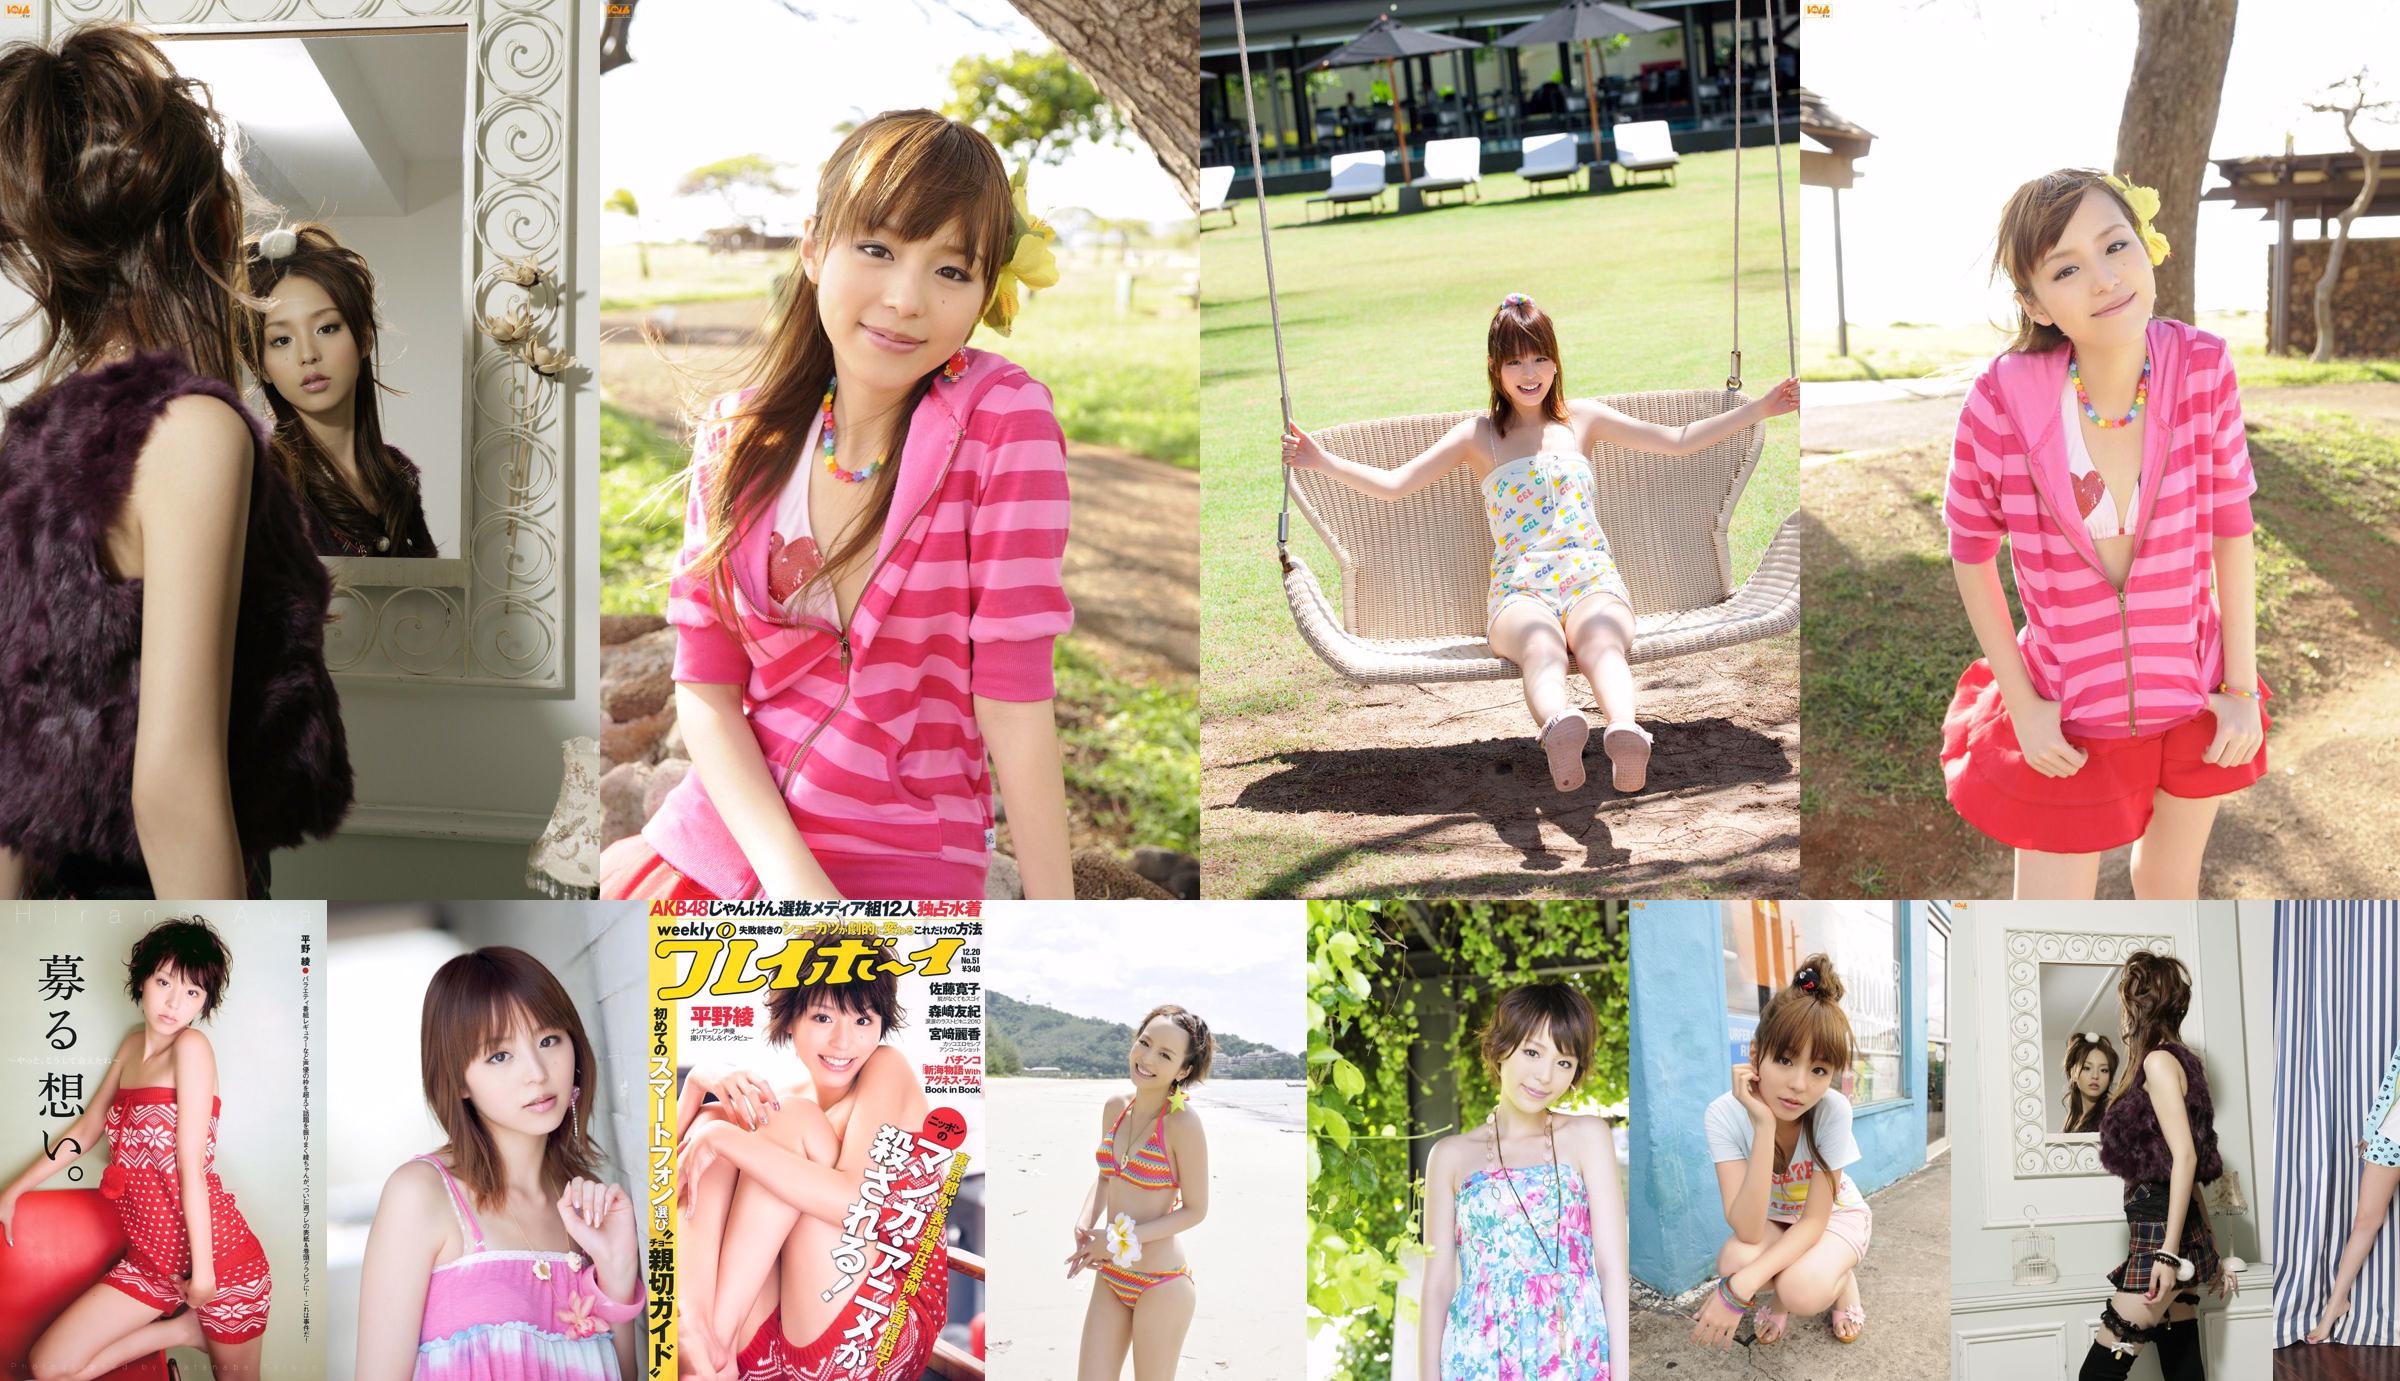 Aya Hirano AKB48 Hiroko Sato Mai Nishida Yuki Morisaki Agnes Lum [Wöchentlicher Playboy] 2010 No.51 Photo Magazine No.a3c2b4 Seite 1